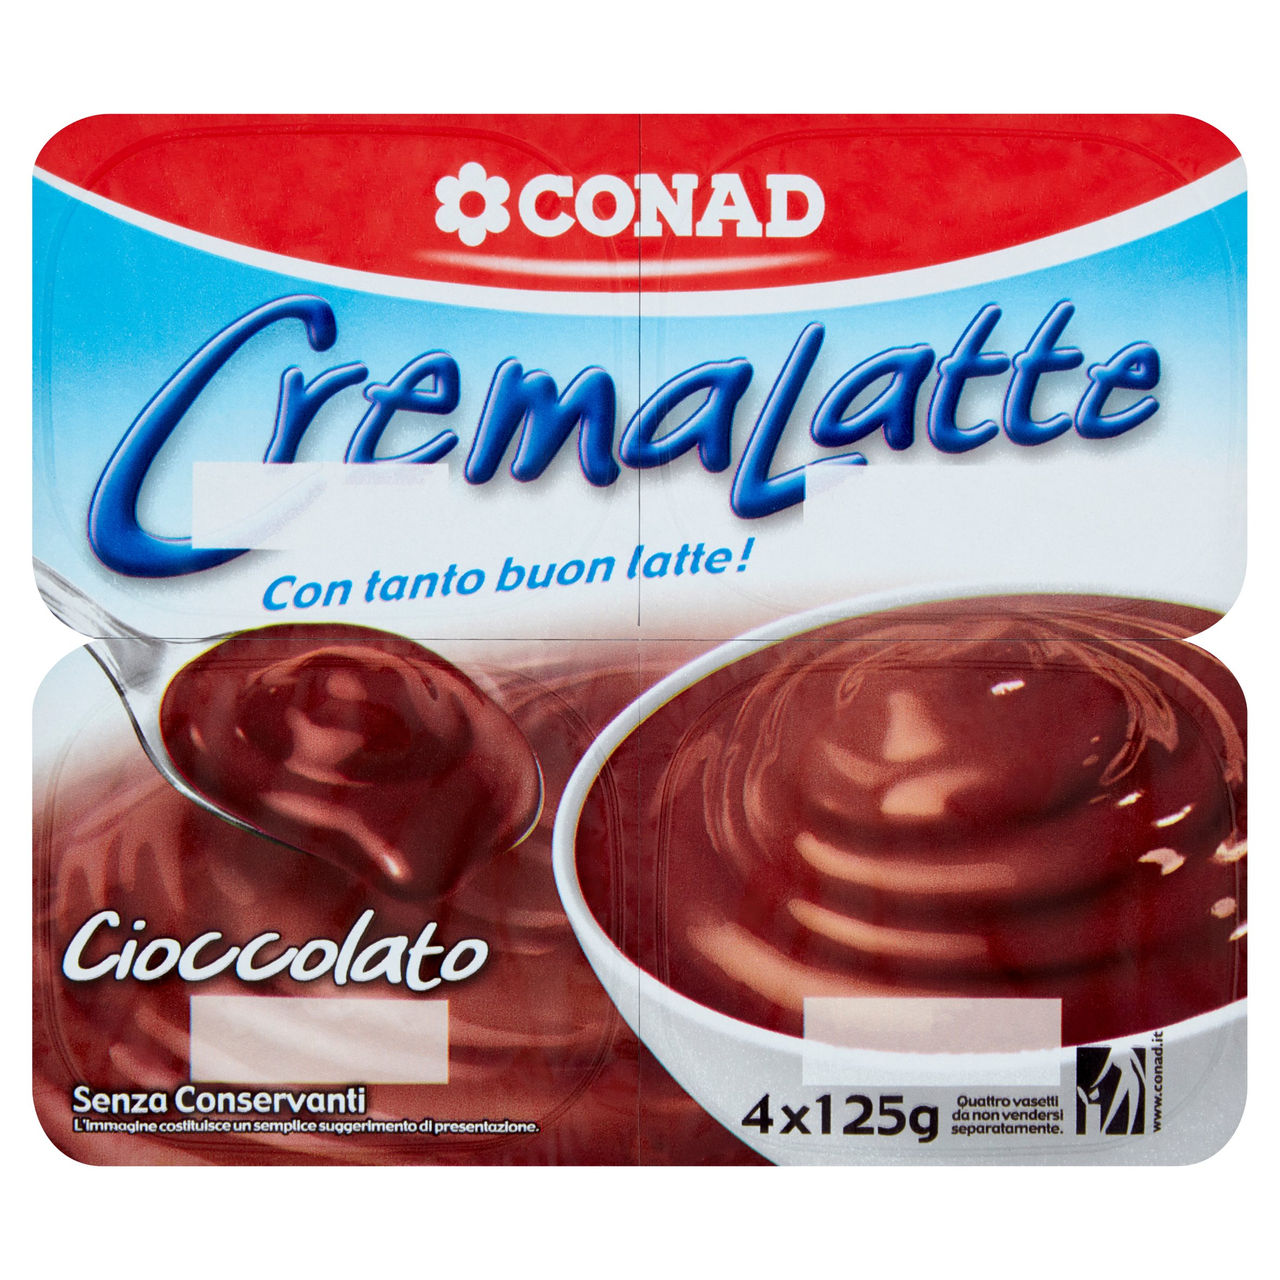 CremaLatte Cioccolato 4 x 125 g Conad